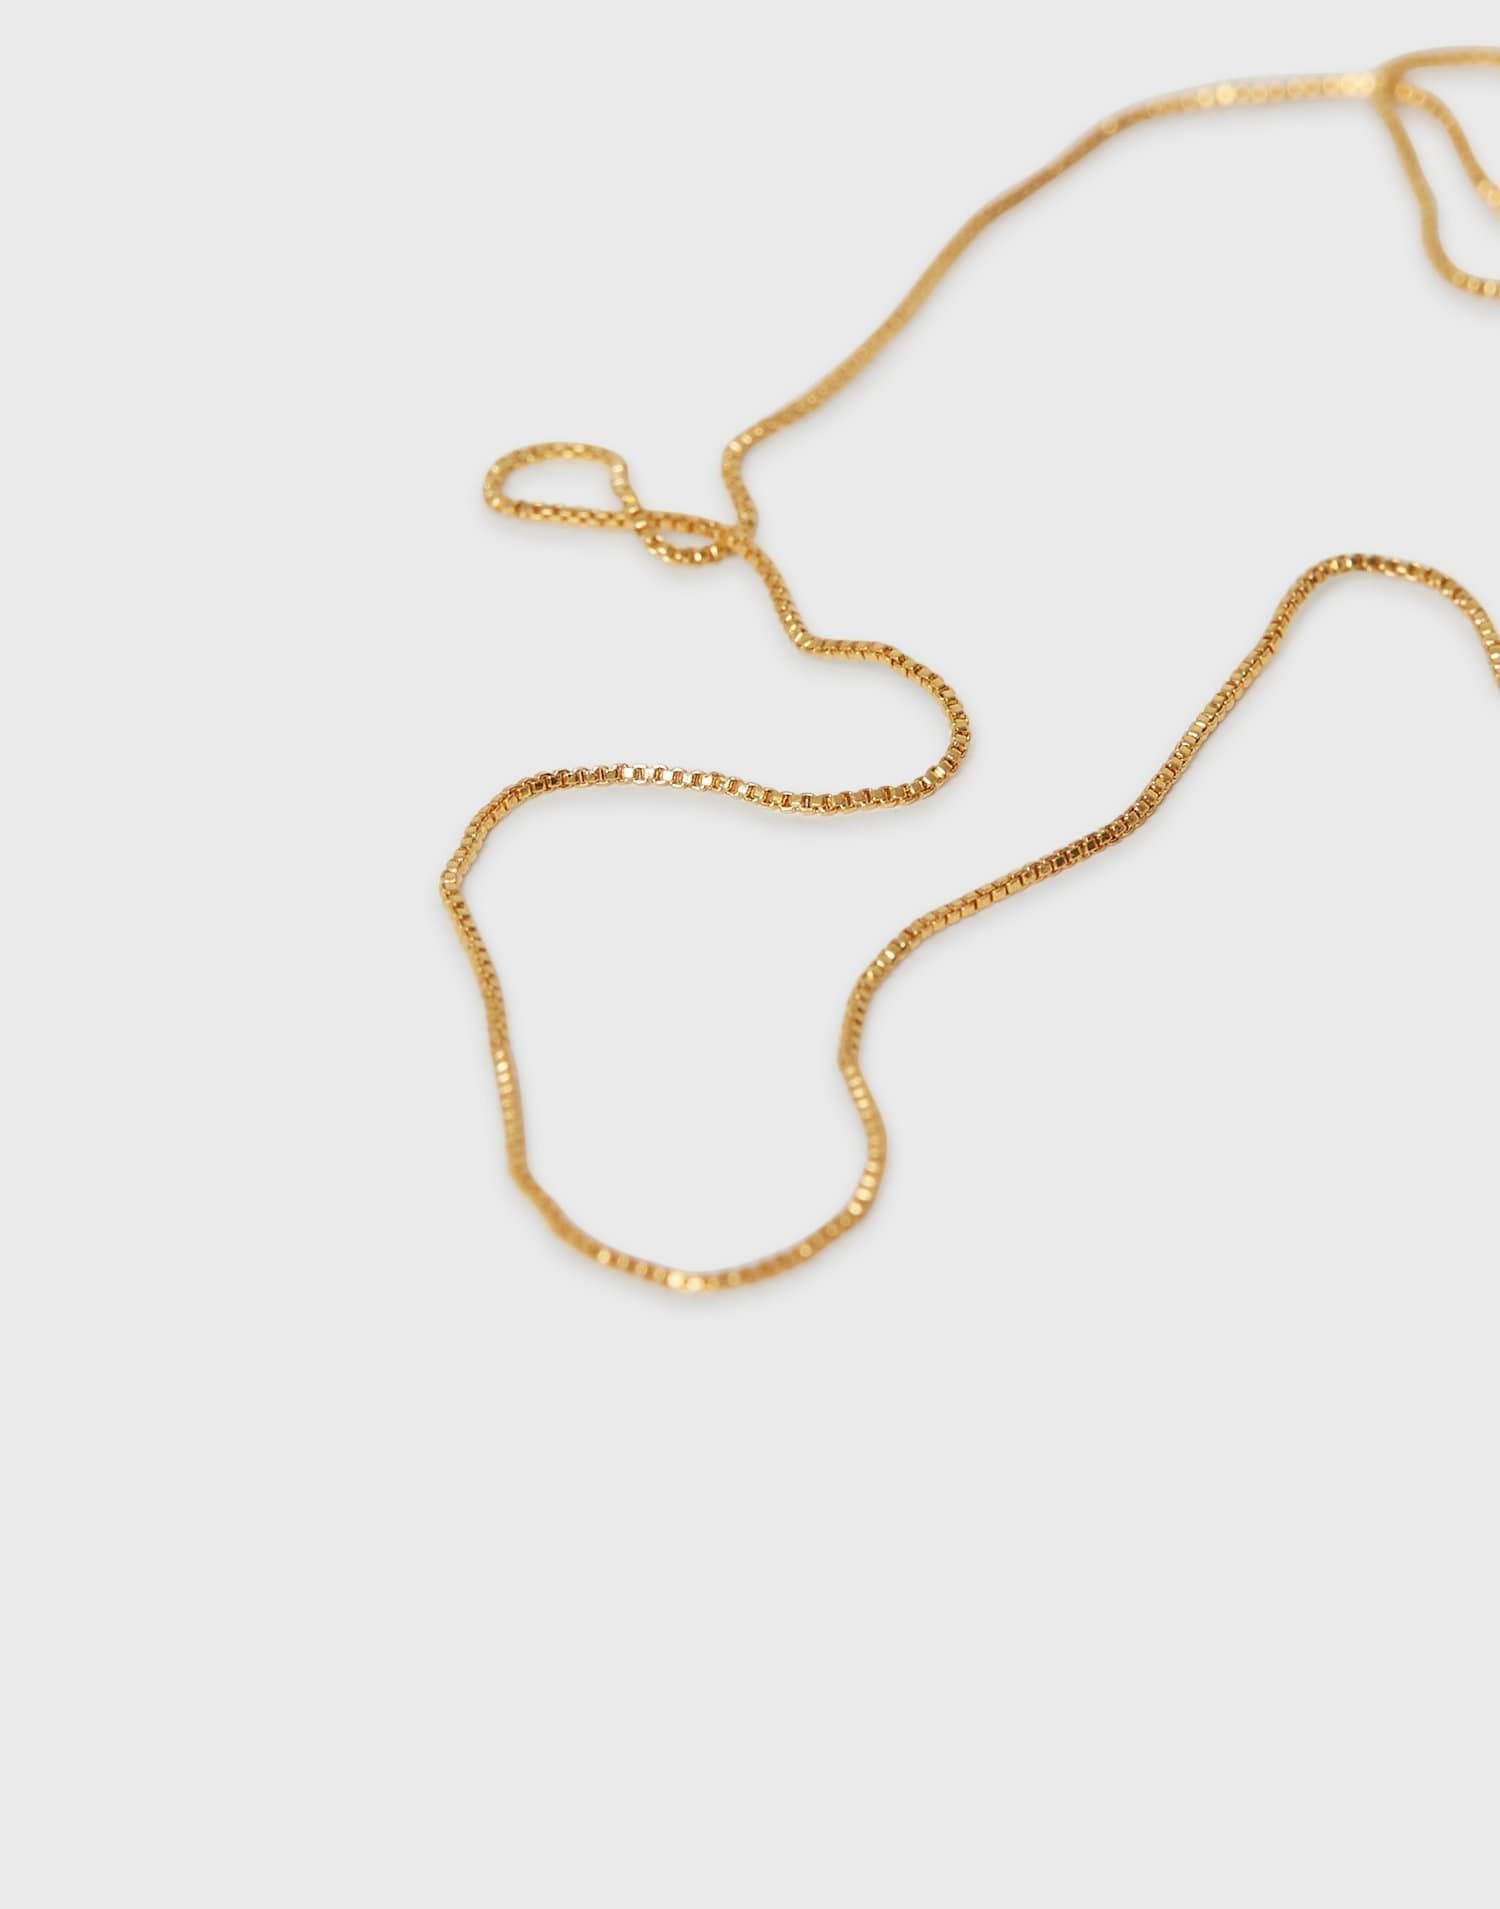 Minimalistic Box Chain Necklace